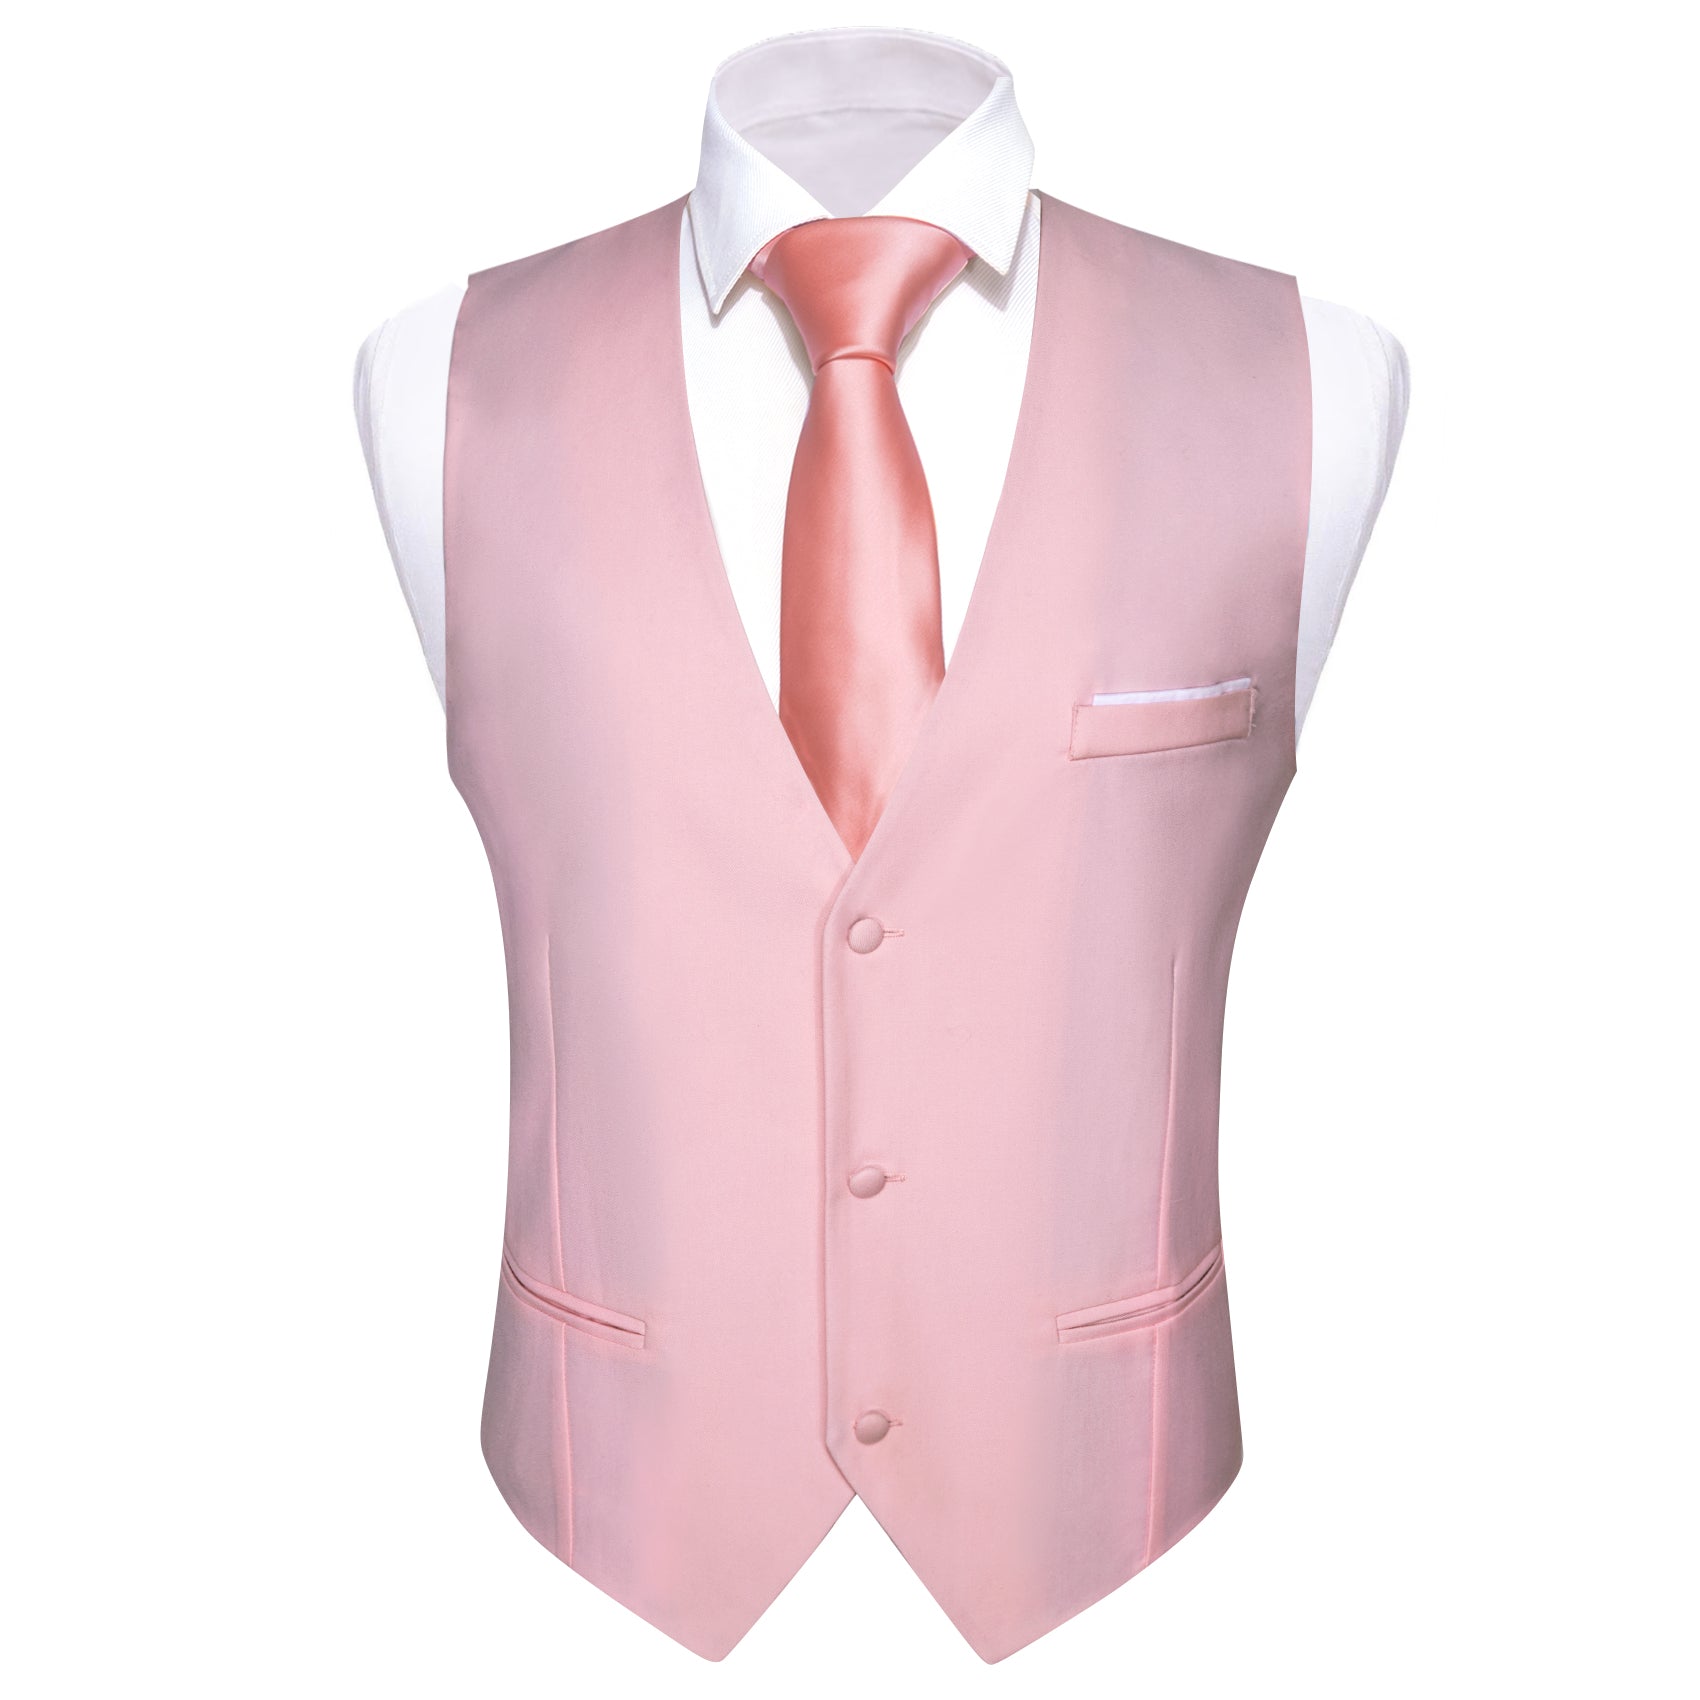 New Men's Pink Solid V-Neck Waistcoat Vest for Business